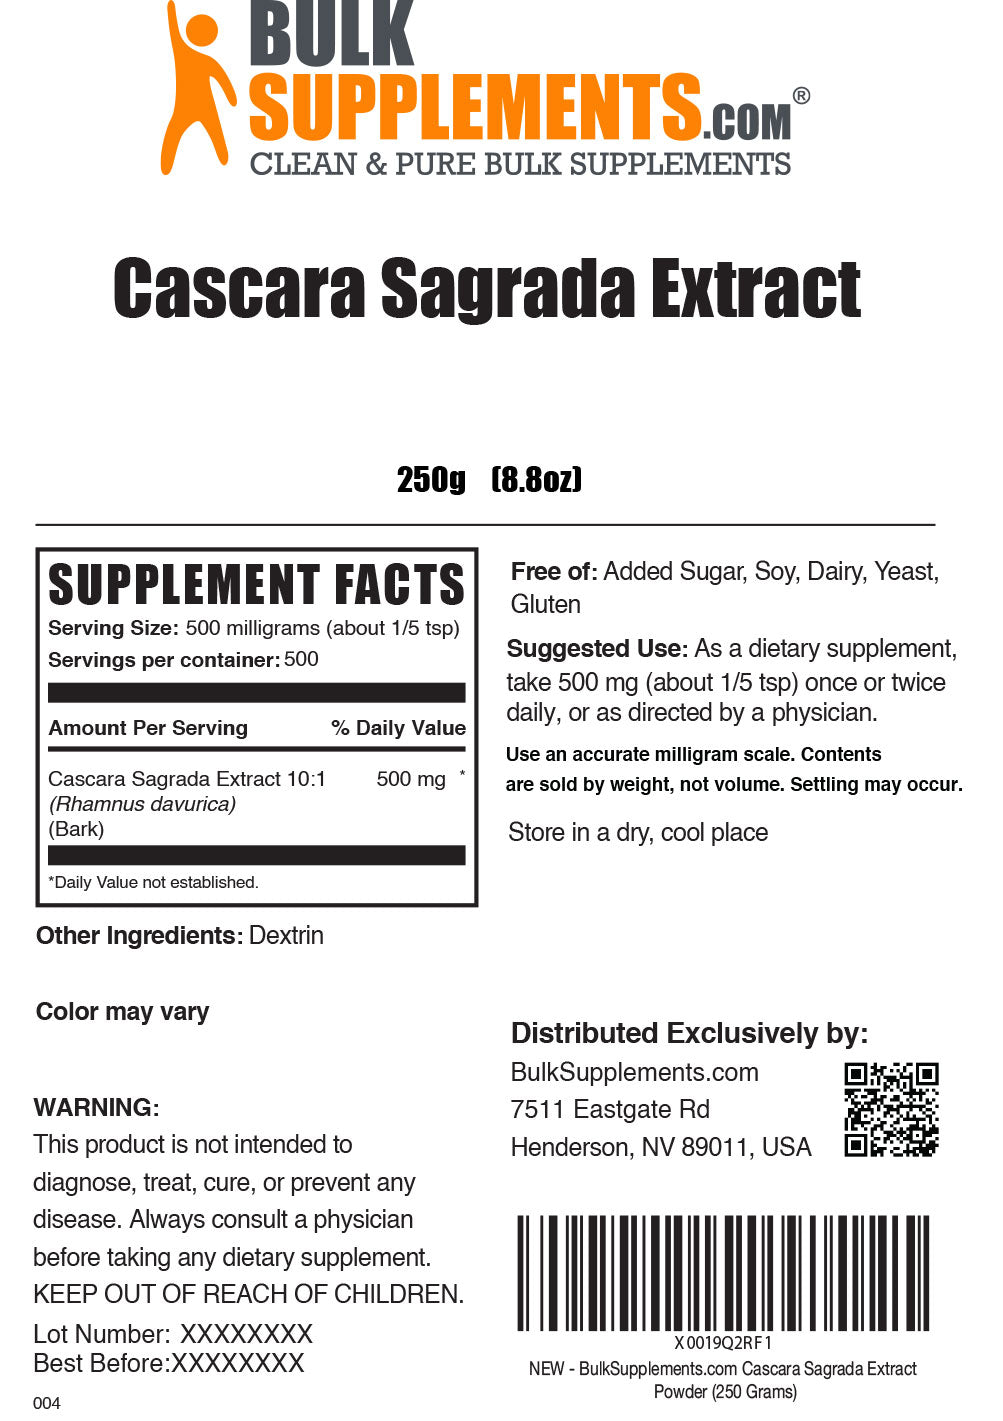 Порошок екстракту Cascara Sagrada